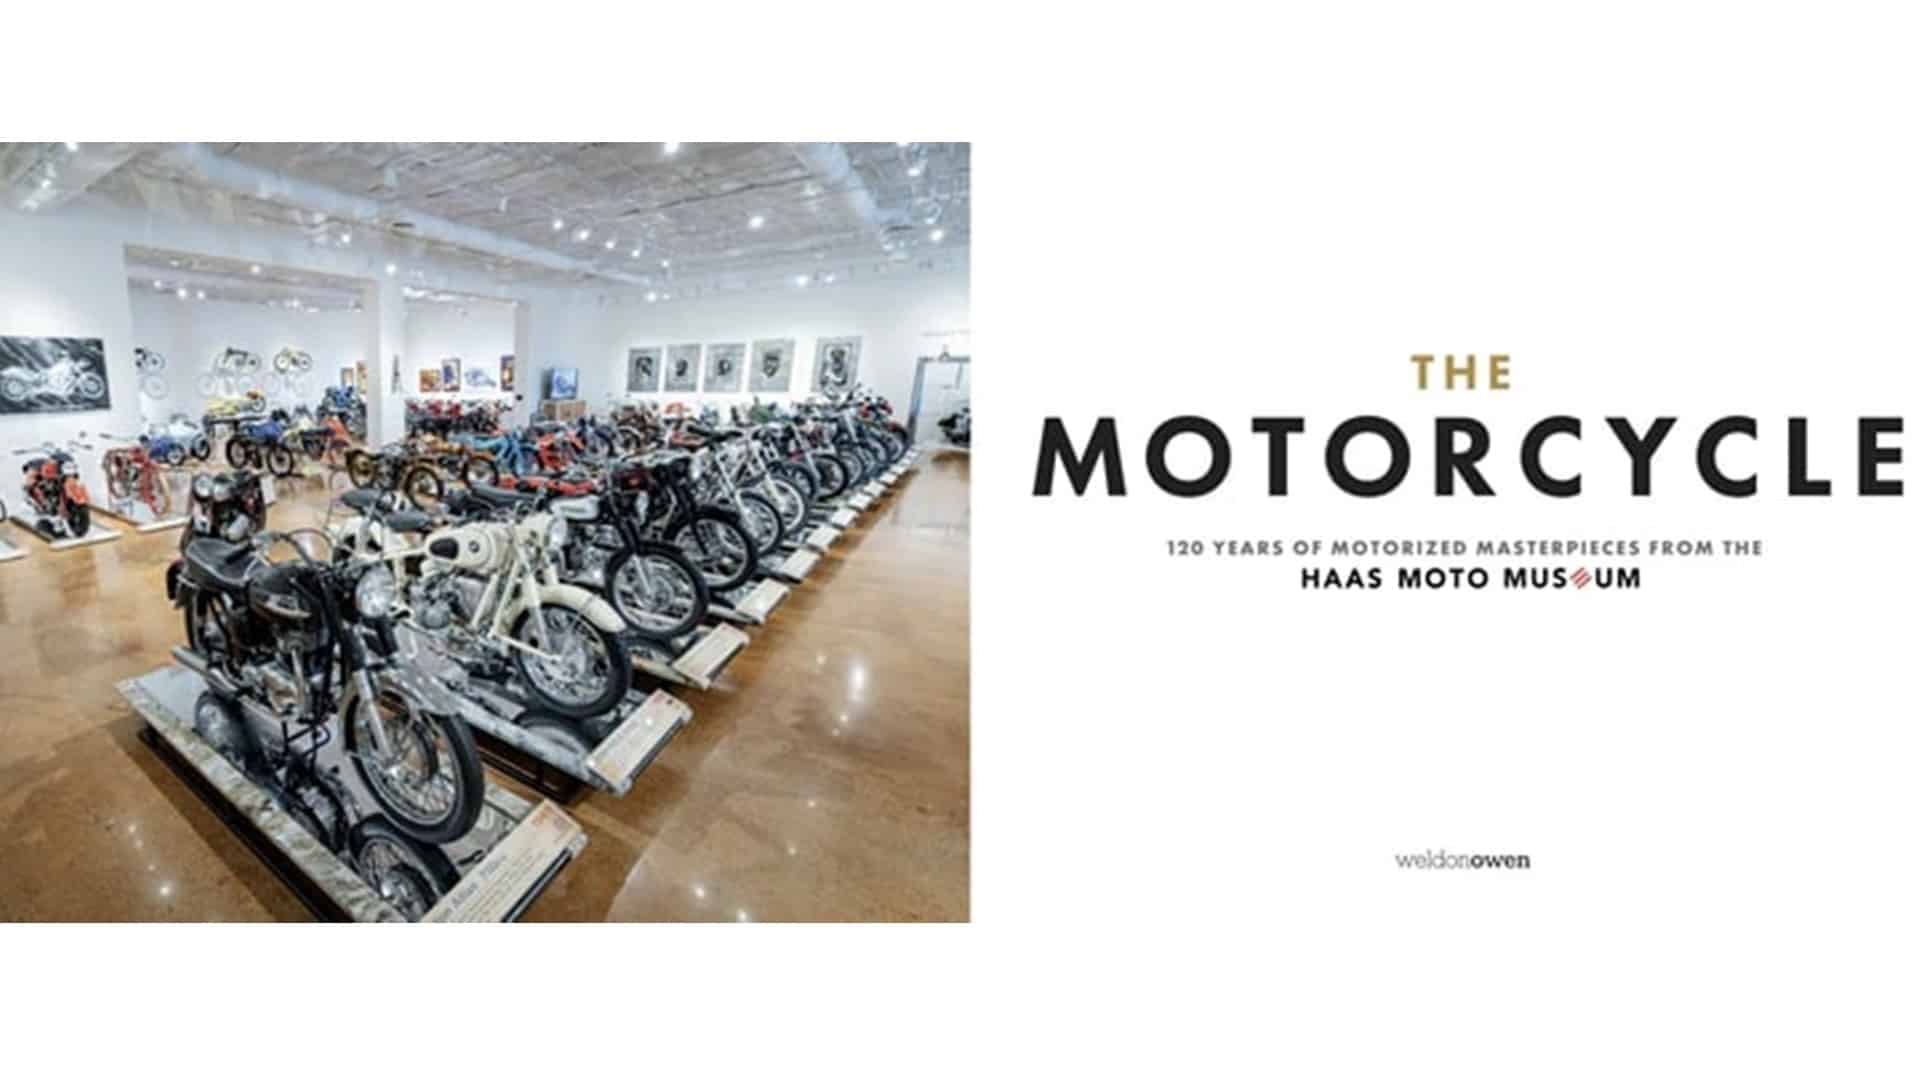 Haas Moto Museum lanzará "Motorcycle", el libro definitivo que repasa su historia